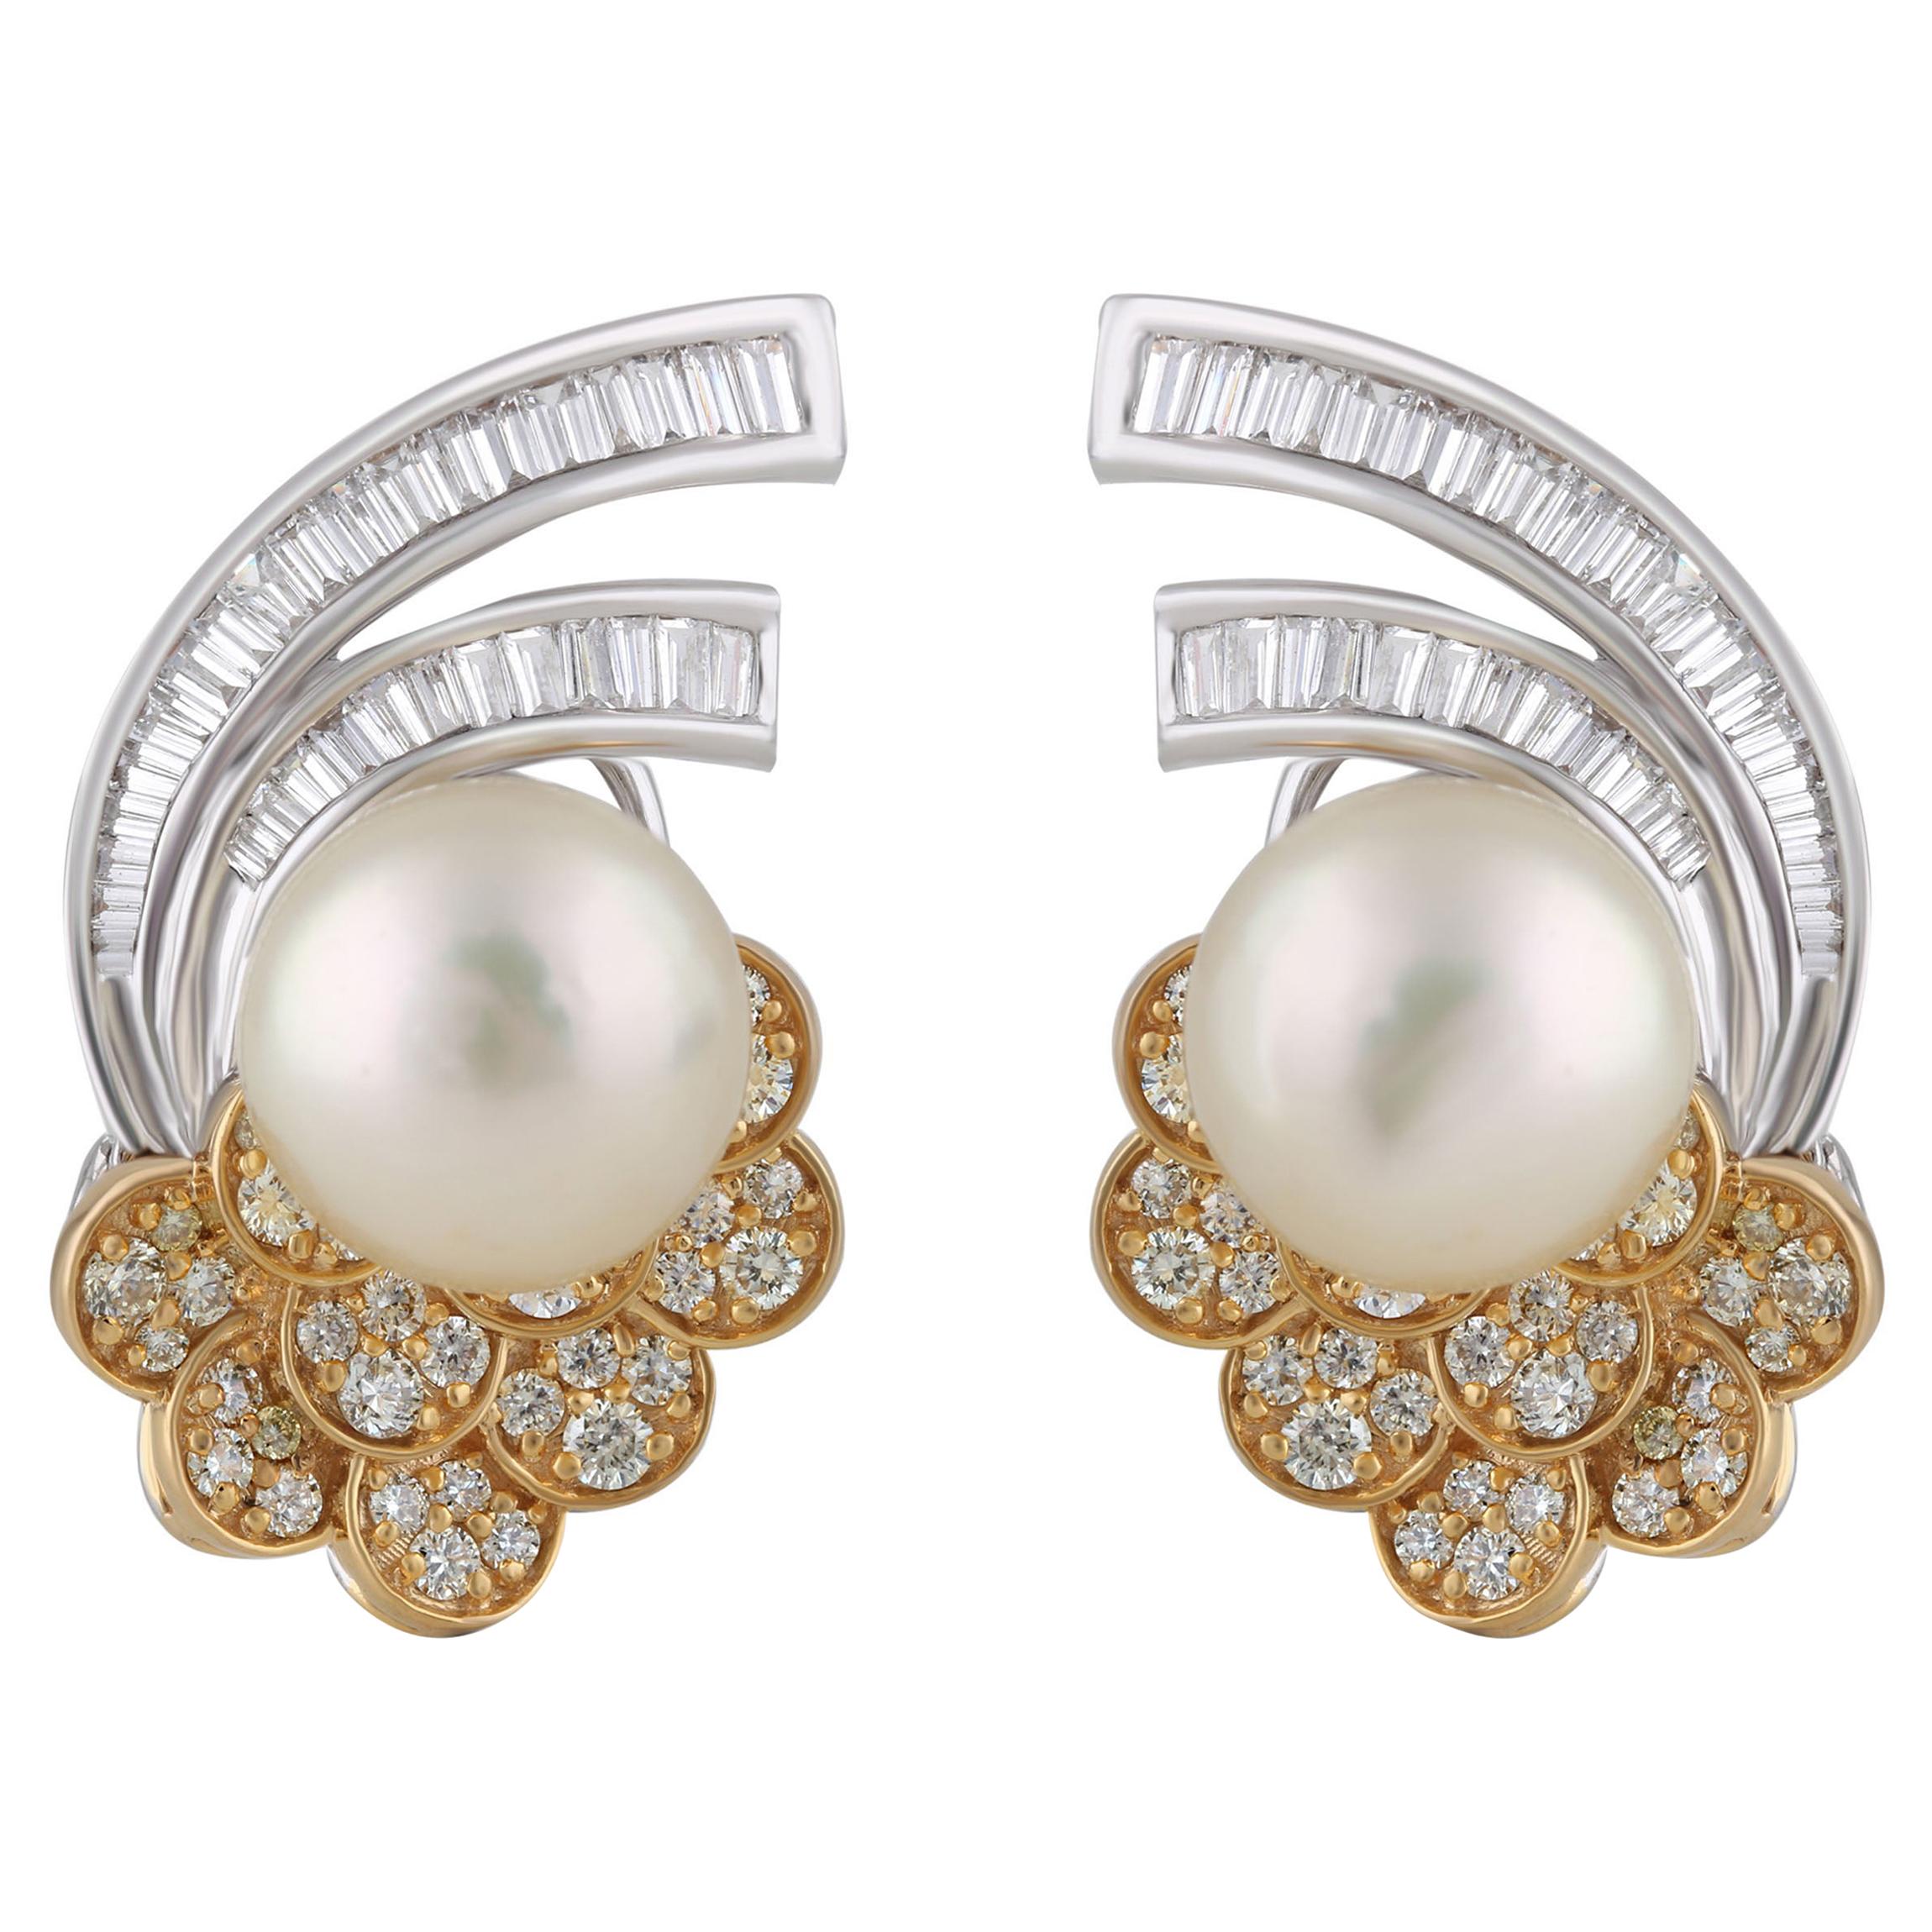 Studio Rêves Ocean Inspired Diamond and Pearl Stud Earrings in 18 Karat Gold For Sale